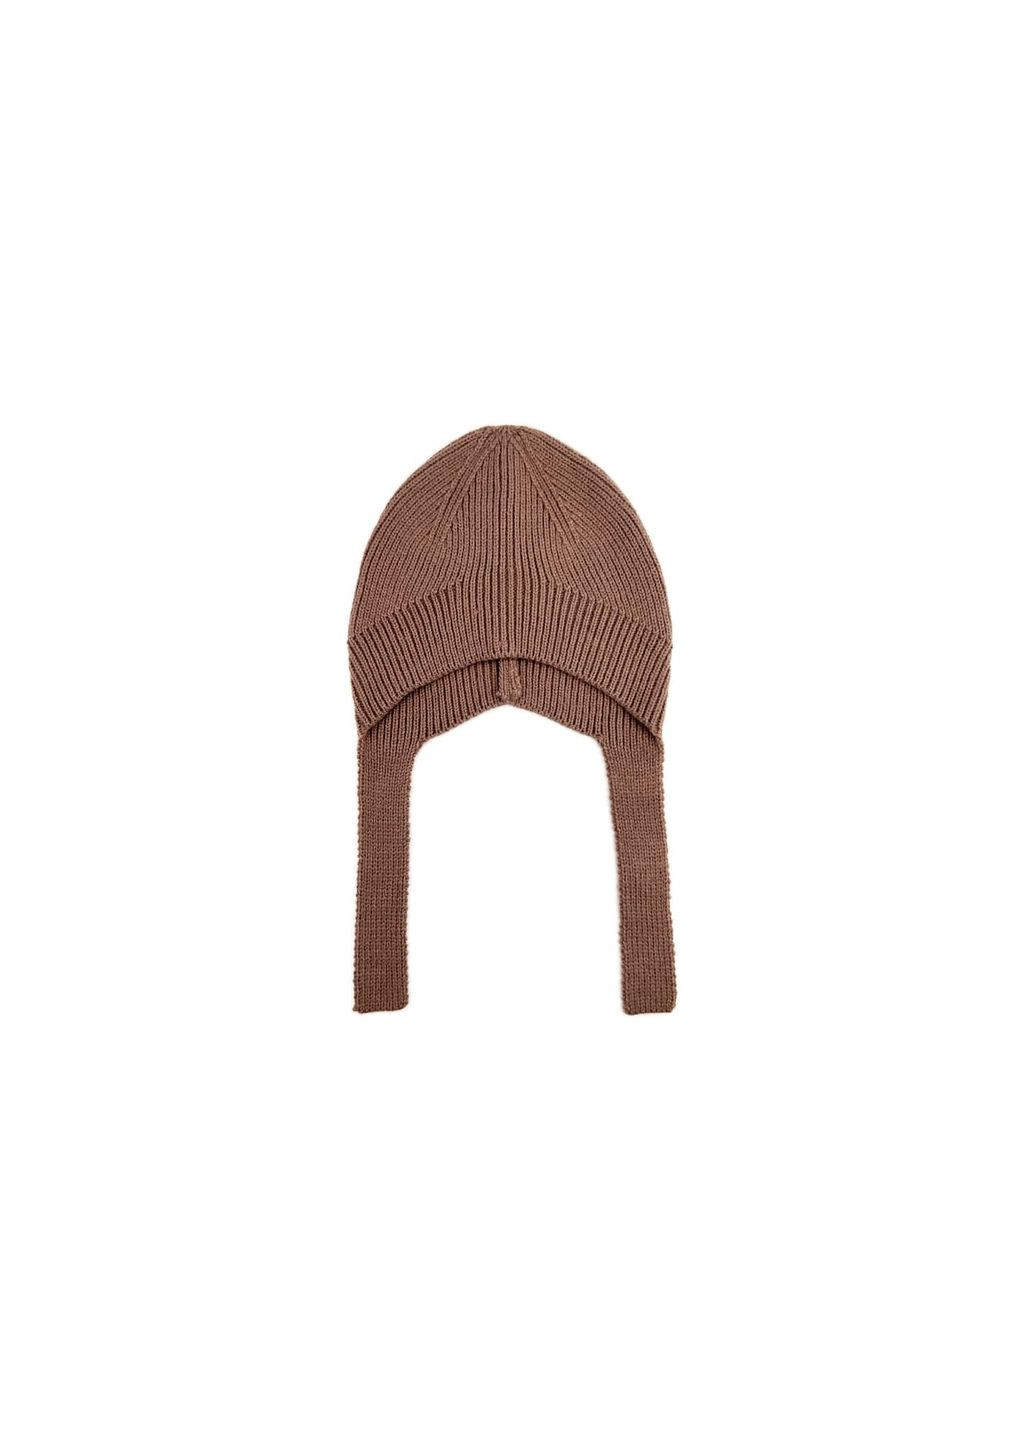 Шапка по голове с завязками женская шерсть с акрилом коричневая CANDY LuckyLOOK 954-756 (290278056)